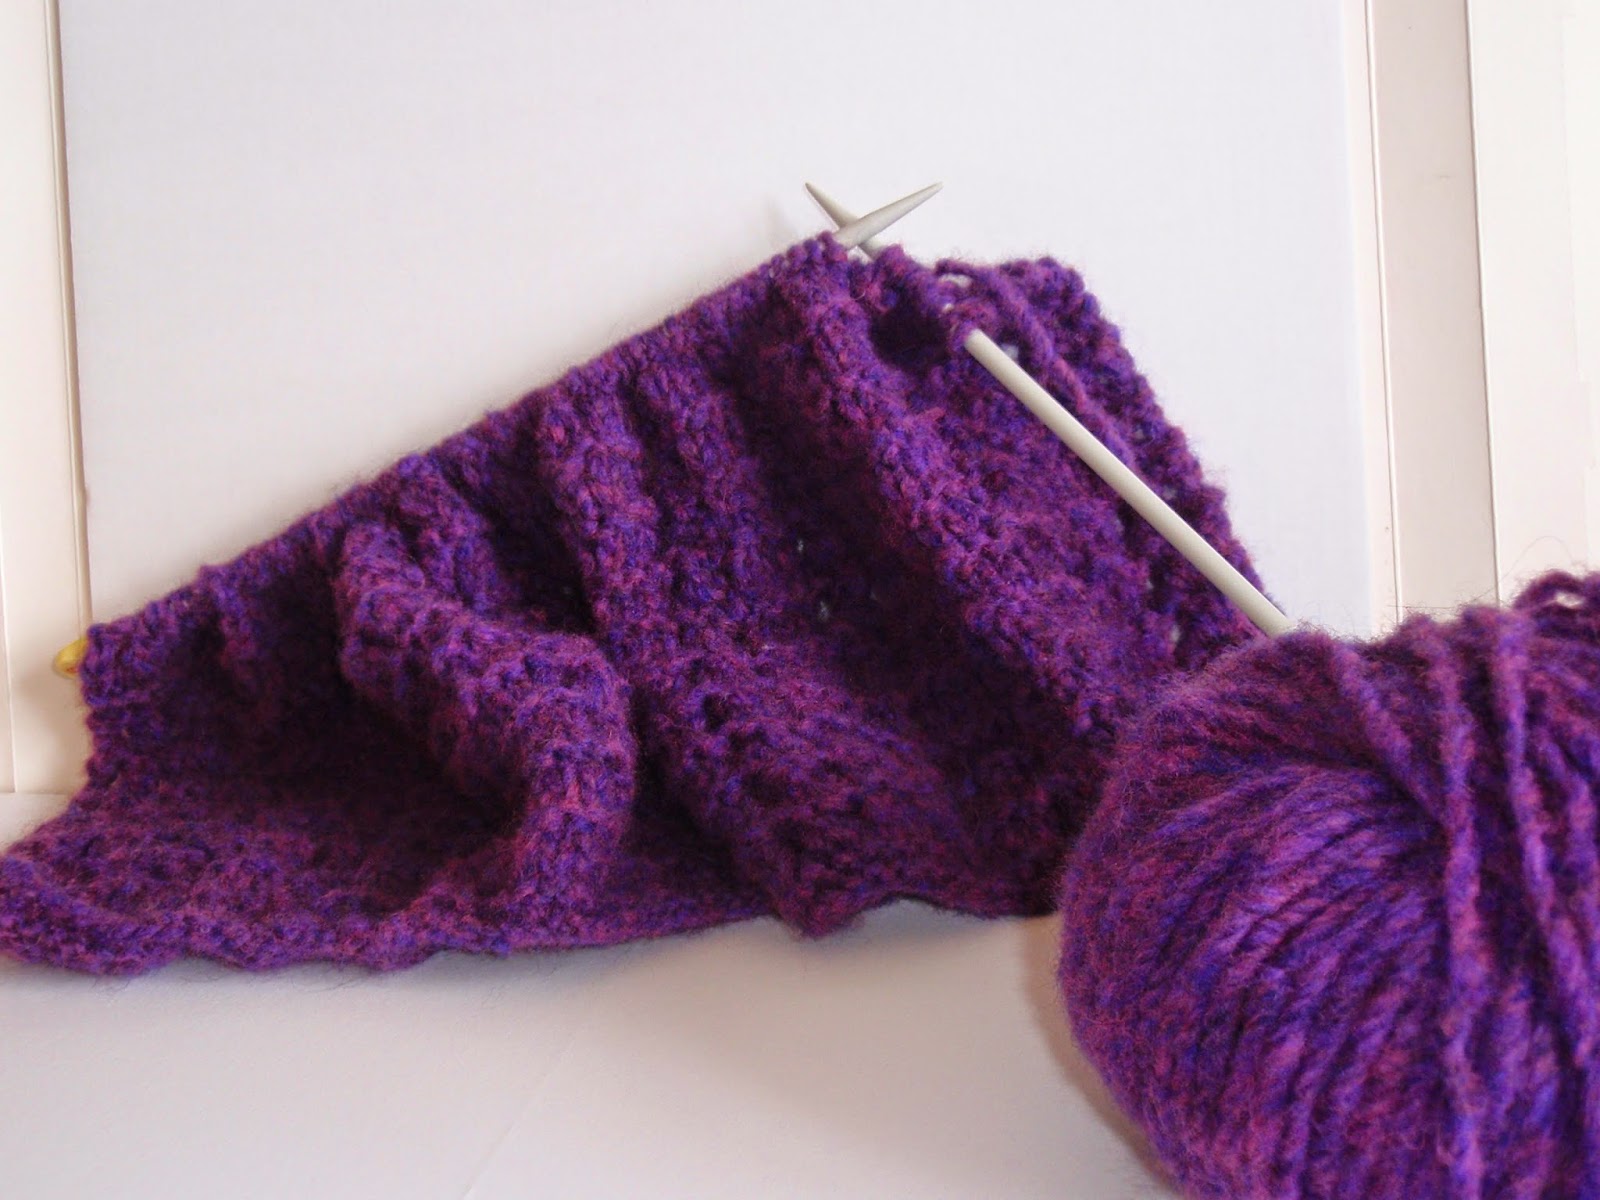 Knitting so far!